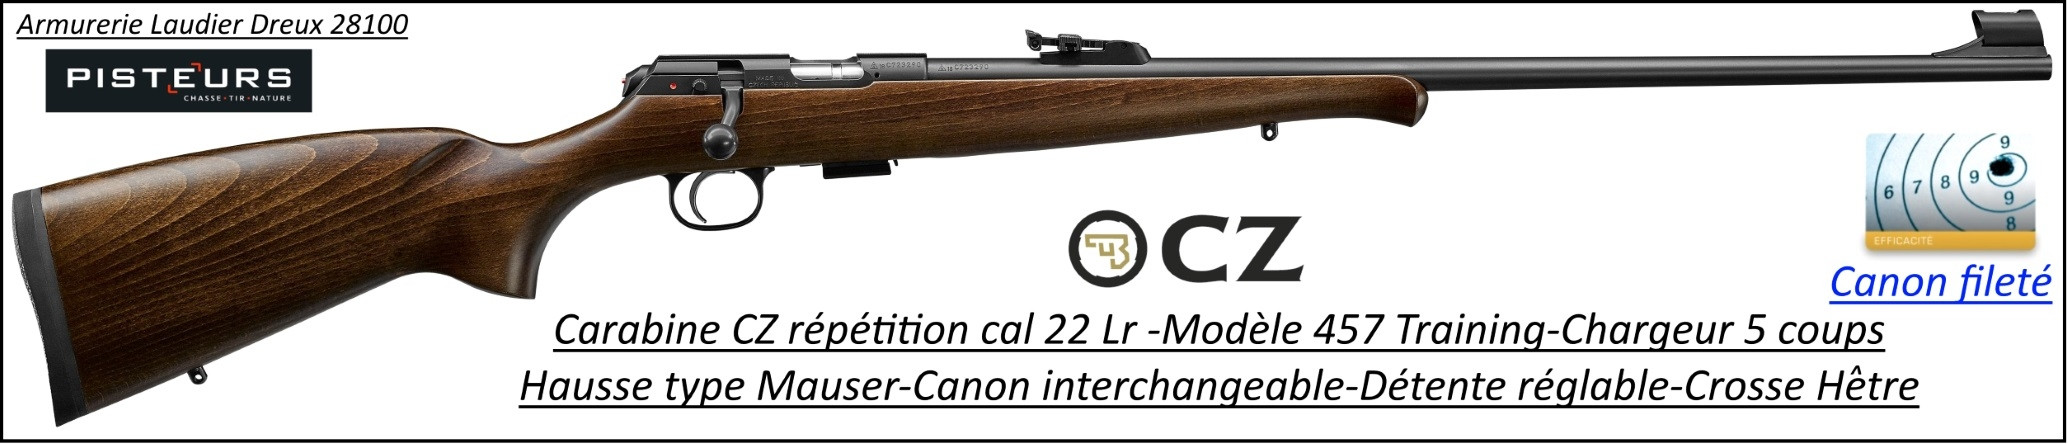 Carabine CZ Mod 457 training Calibre 22 LR Répétition -Promotion-Ref CZ 457 training-781397